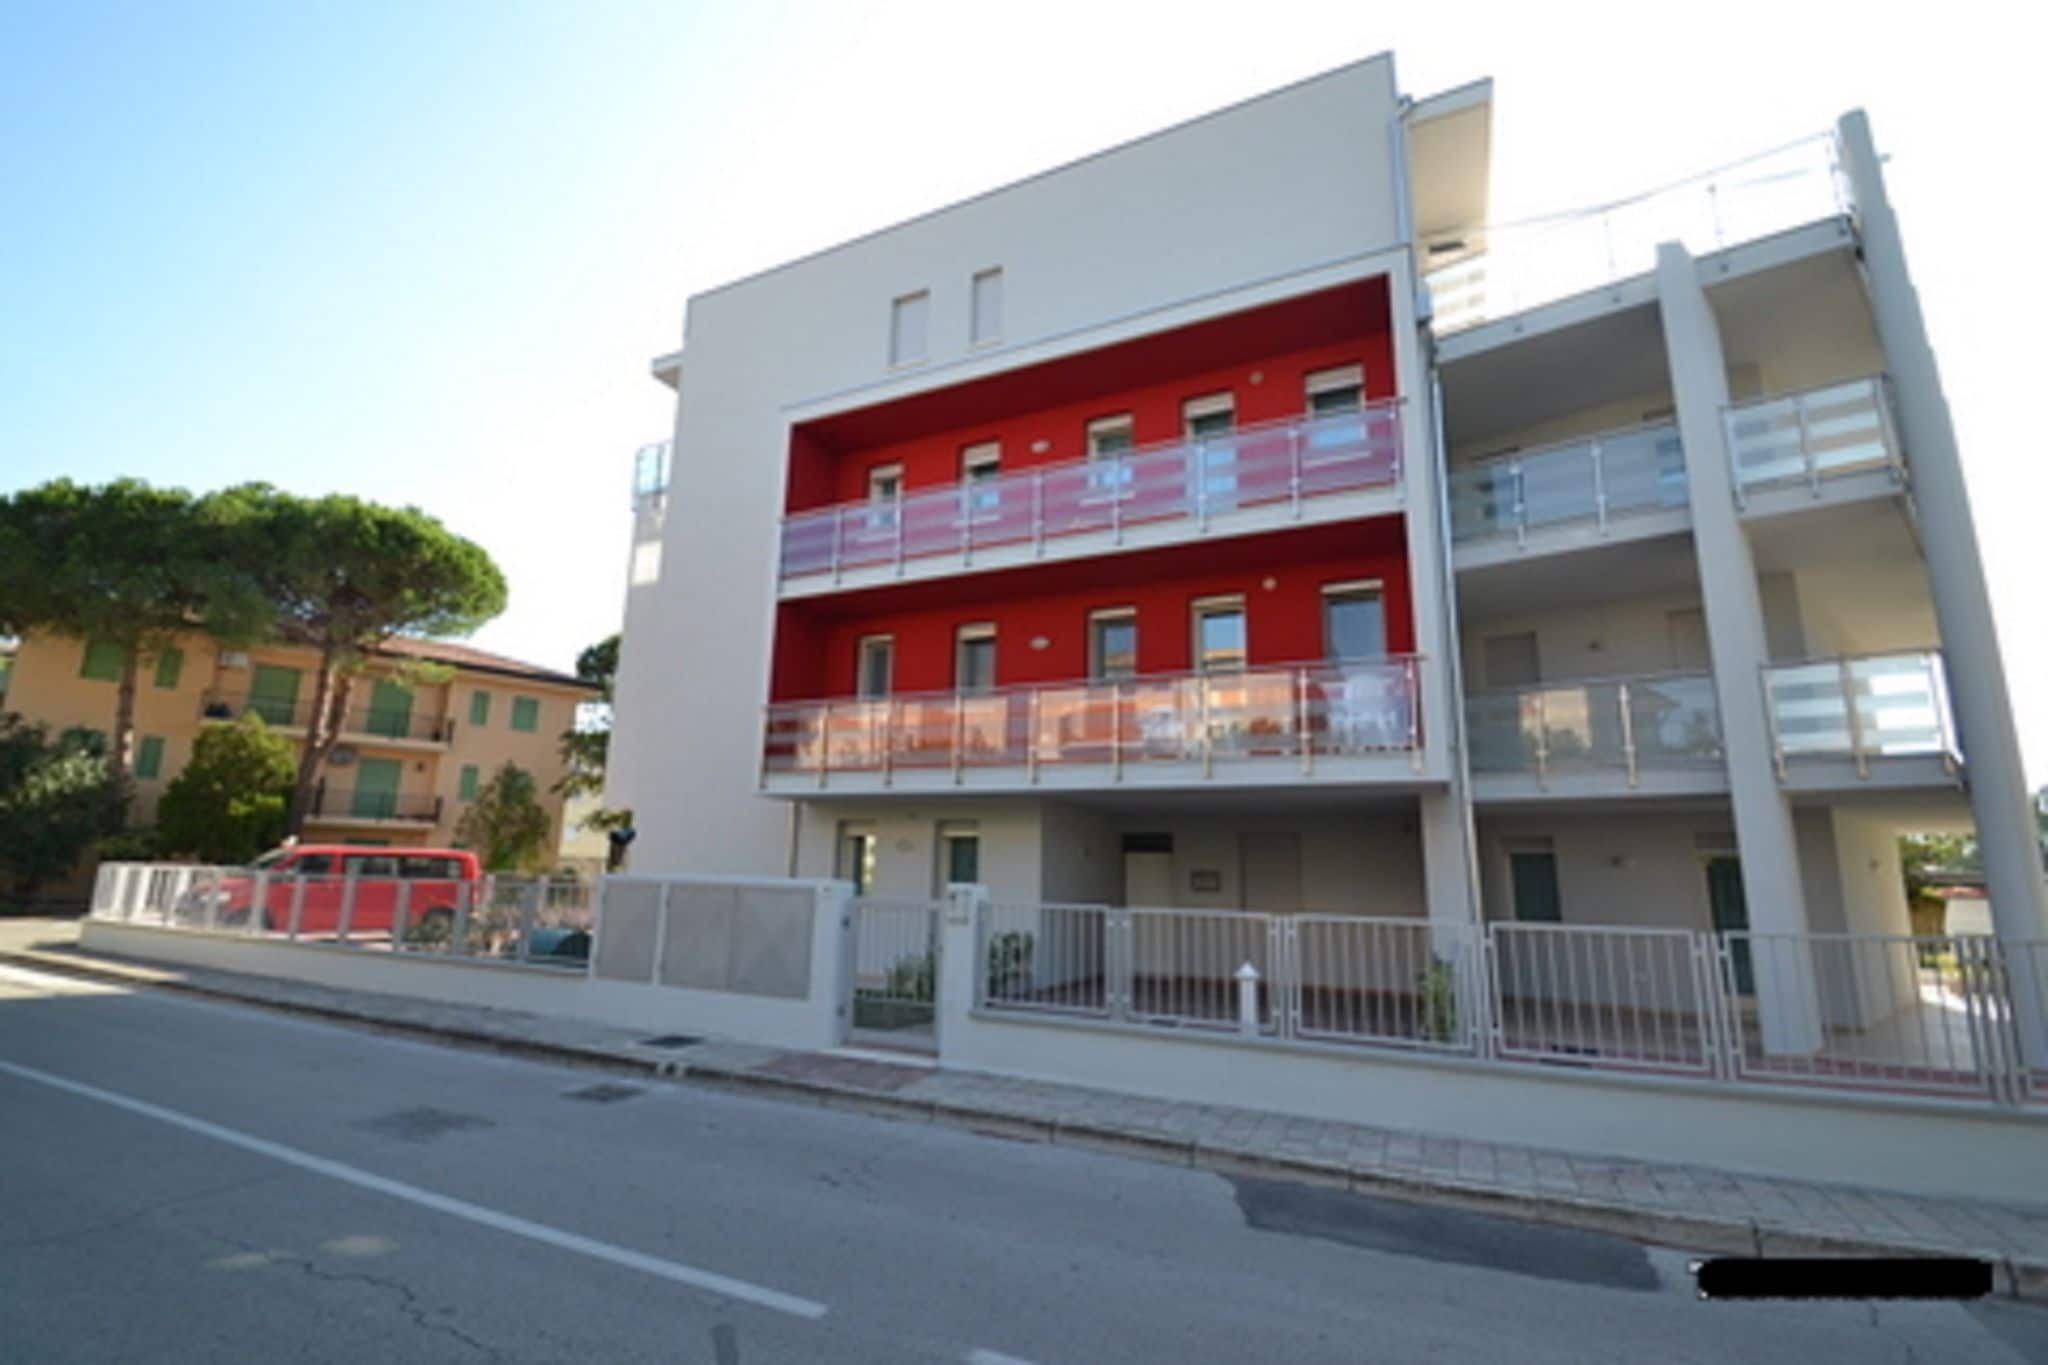 Moderne woning dicht bij de zee, in Rosolina Mare, in de buurt van Venetië.